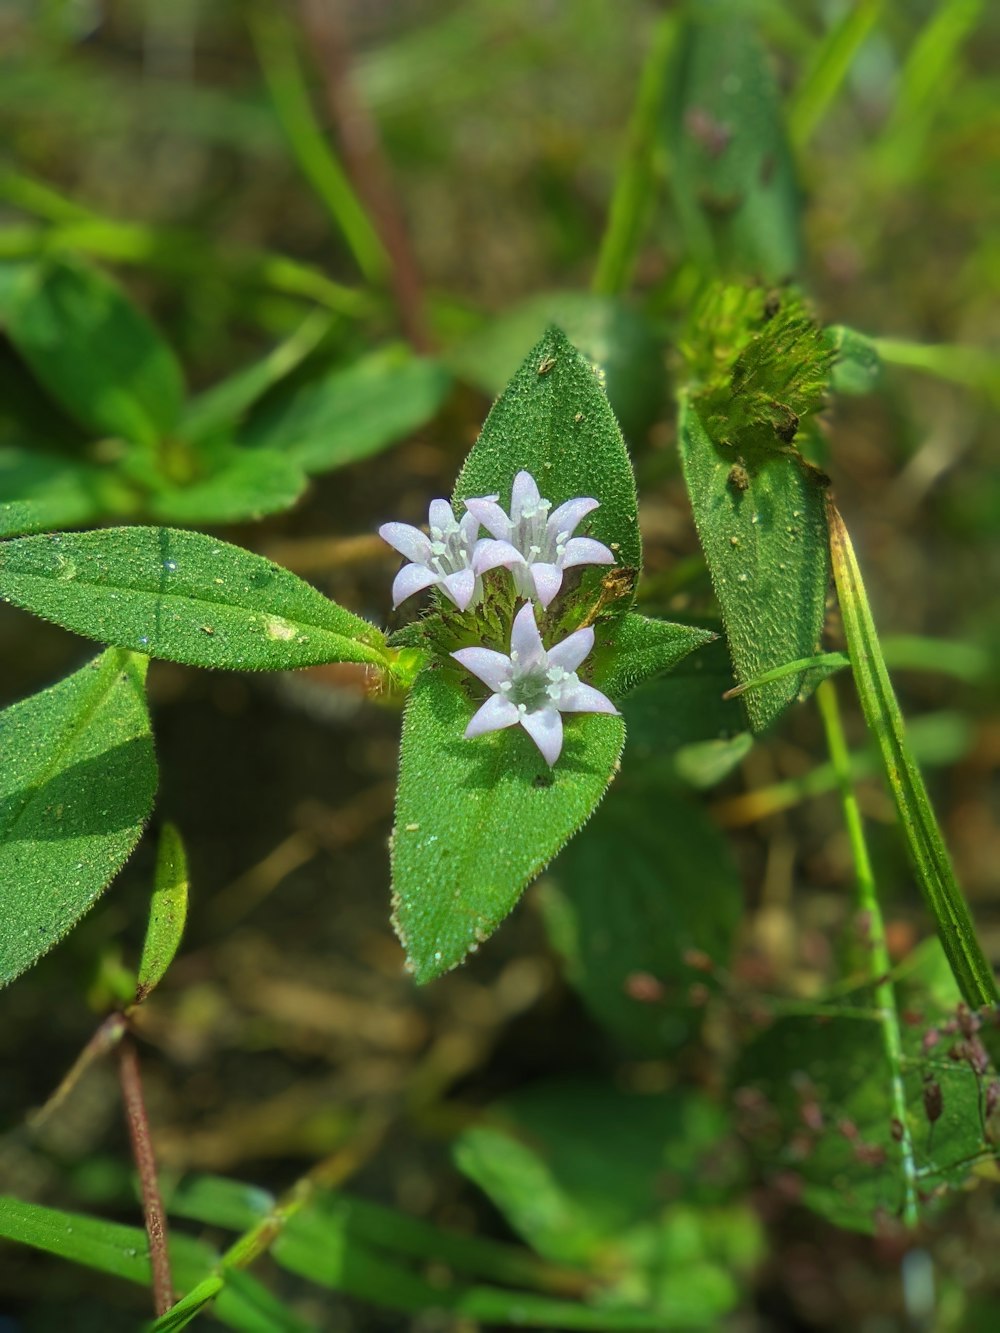 녹색 잎 위에 앉아있는 작은 흰색 꽃